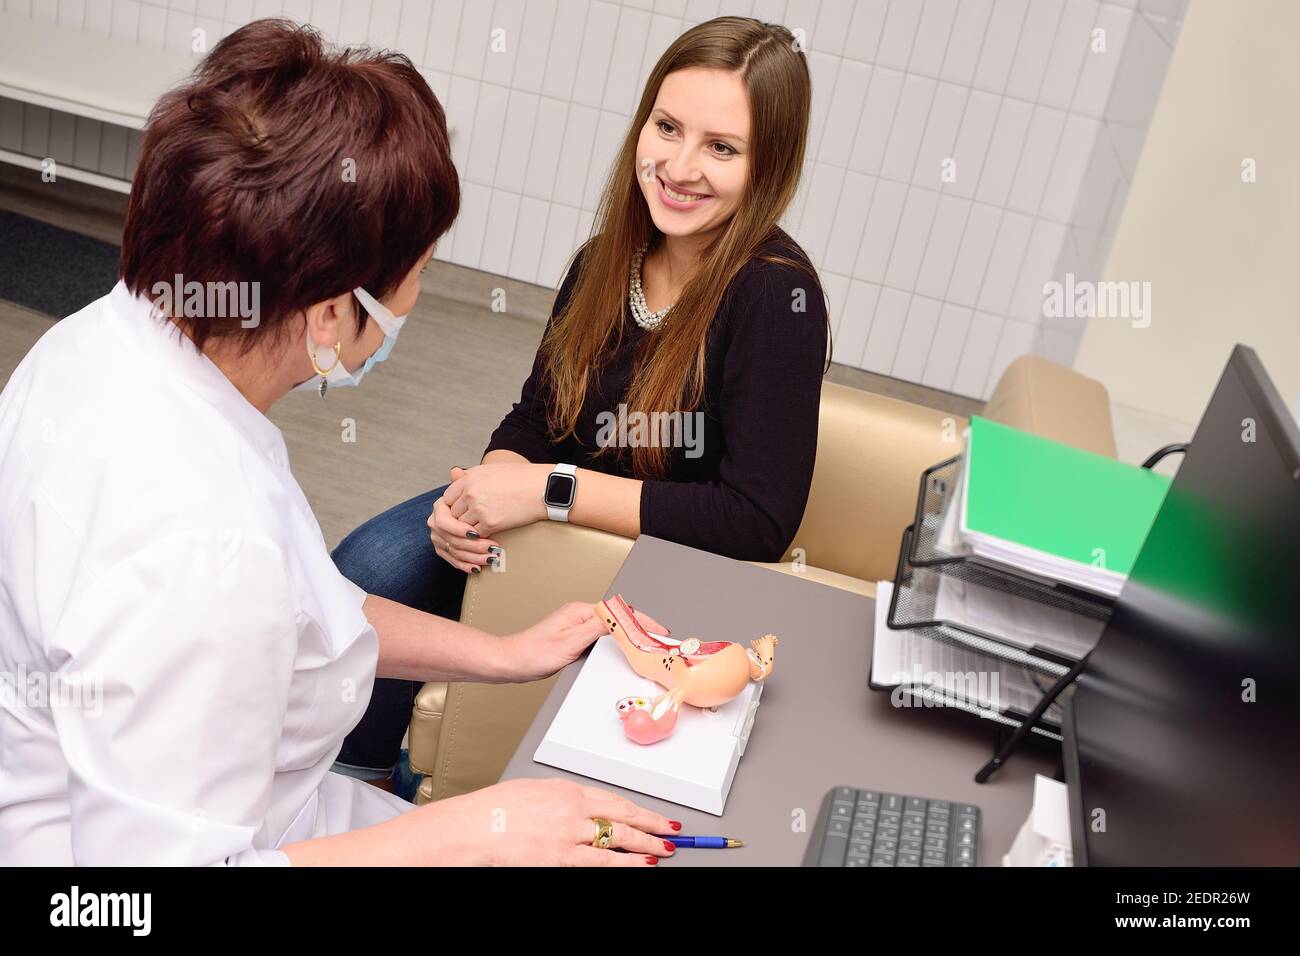 Eine junge Frau wird von einem Gynäkologen/Geburtshelfer konsultiert. Stockfoto